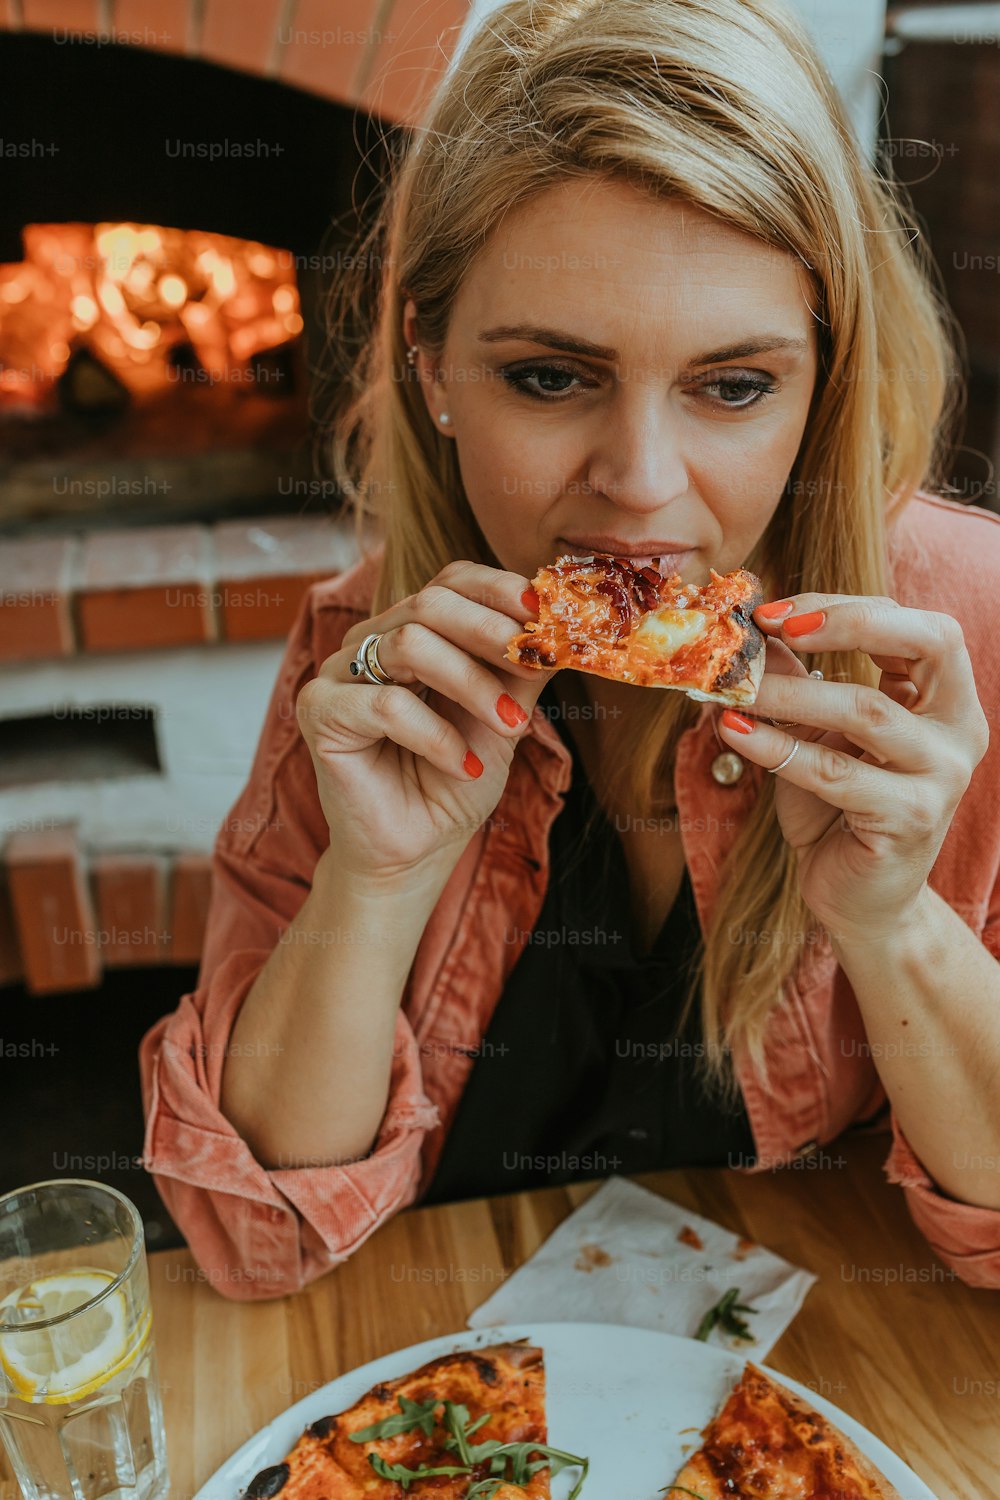 Una mujer sentada en una mesa comiendo una rebanada de pizza